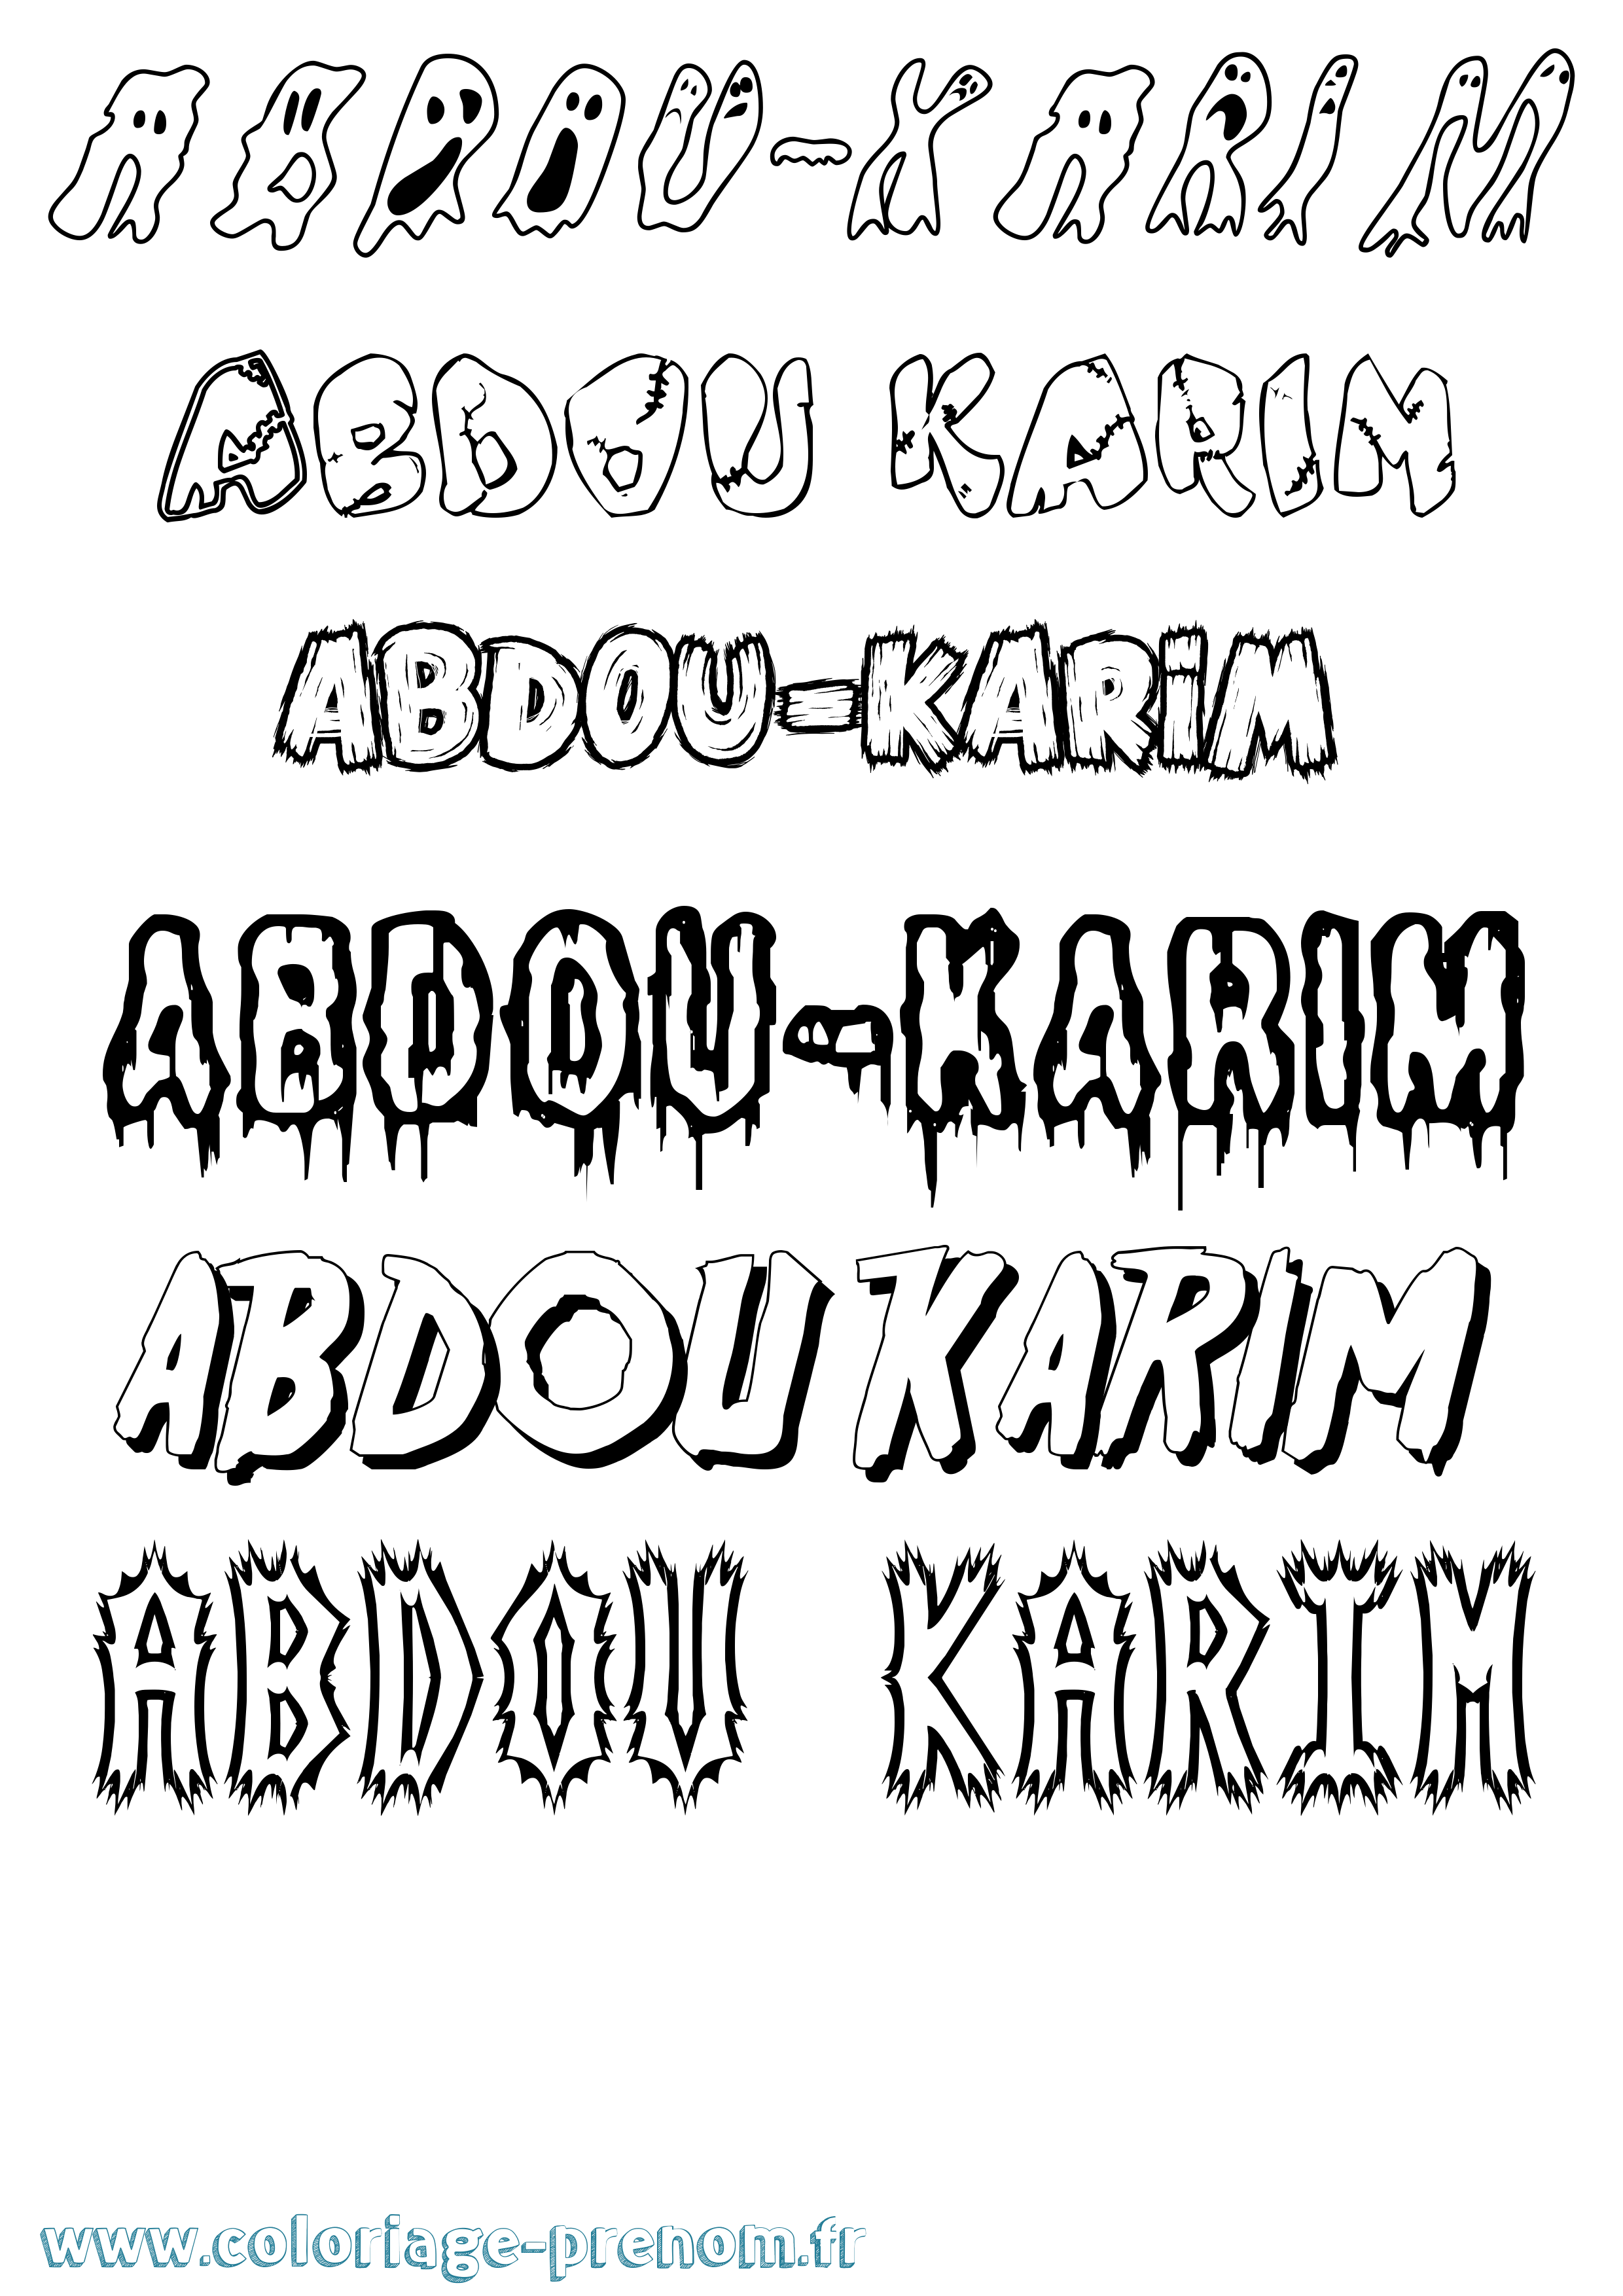 Coloriage prénom Abdou-Karim Frisson